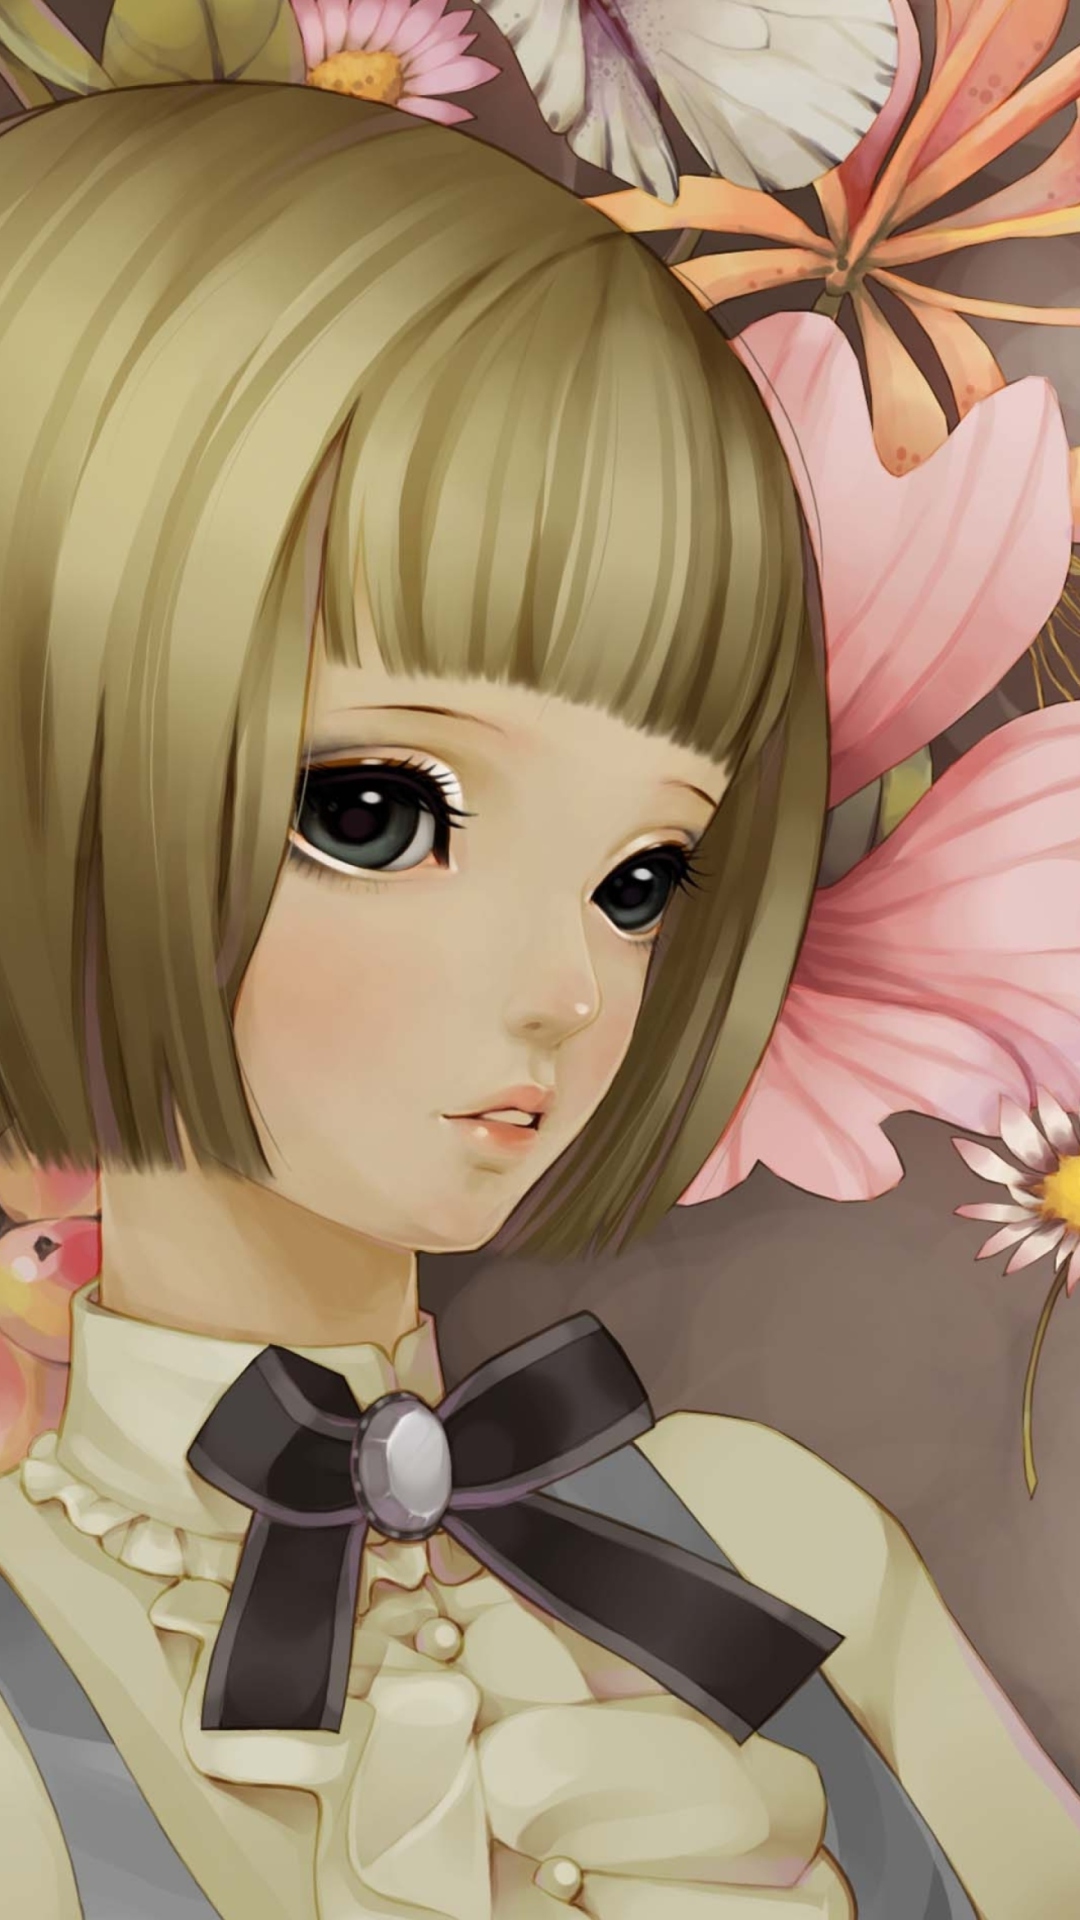 Обои Anime Style Girl And Pink Flowers 1080x1920